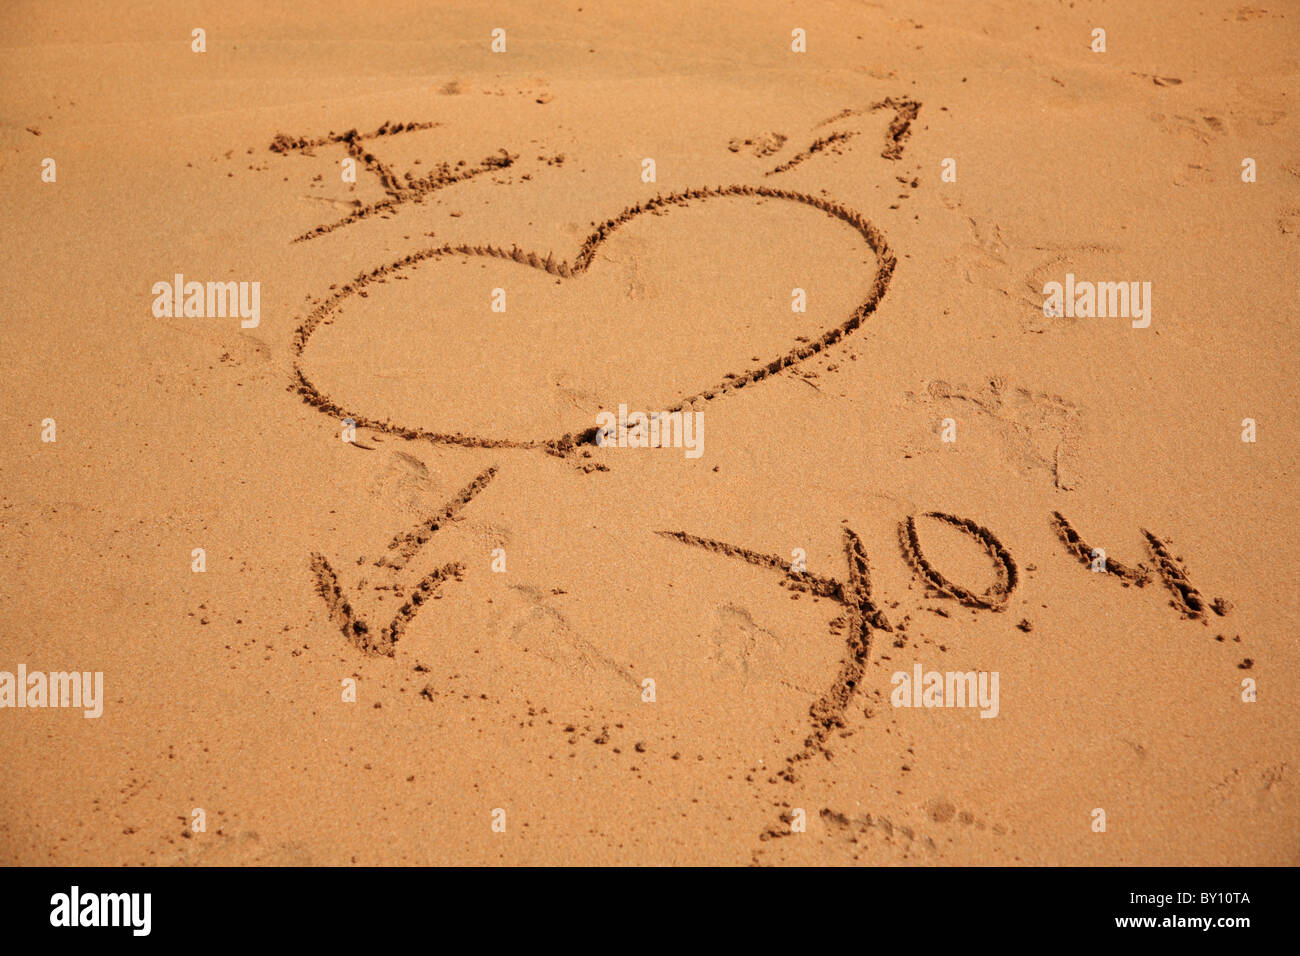 Scritta I love you sulla sabbia Stock Photo